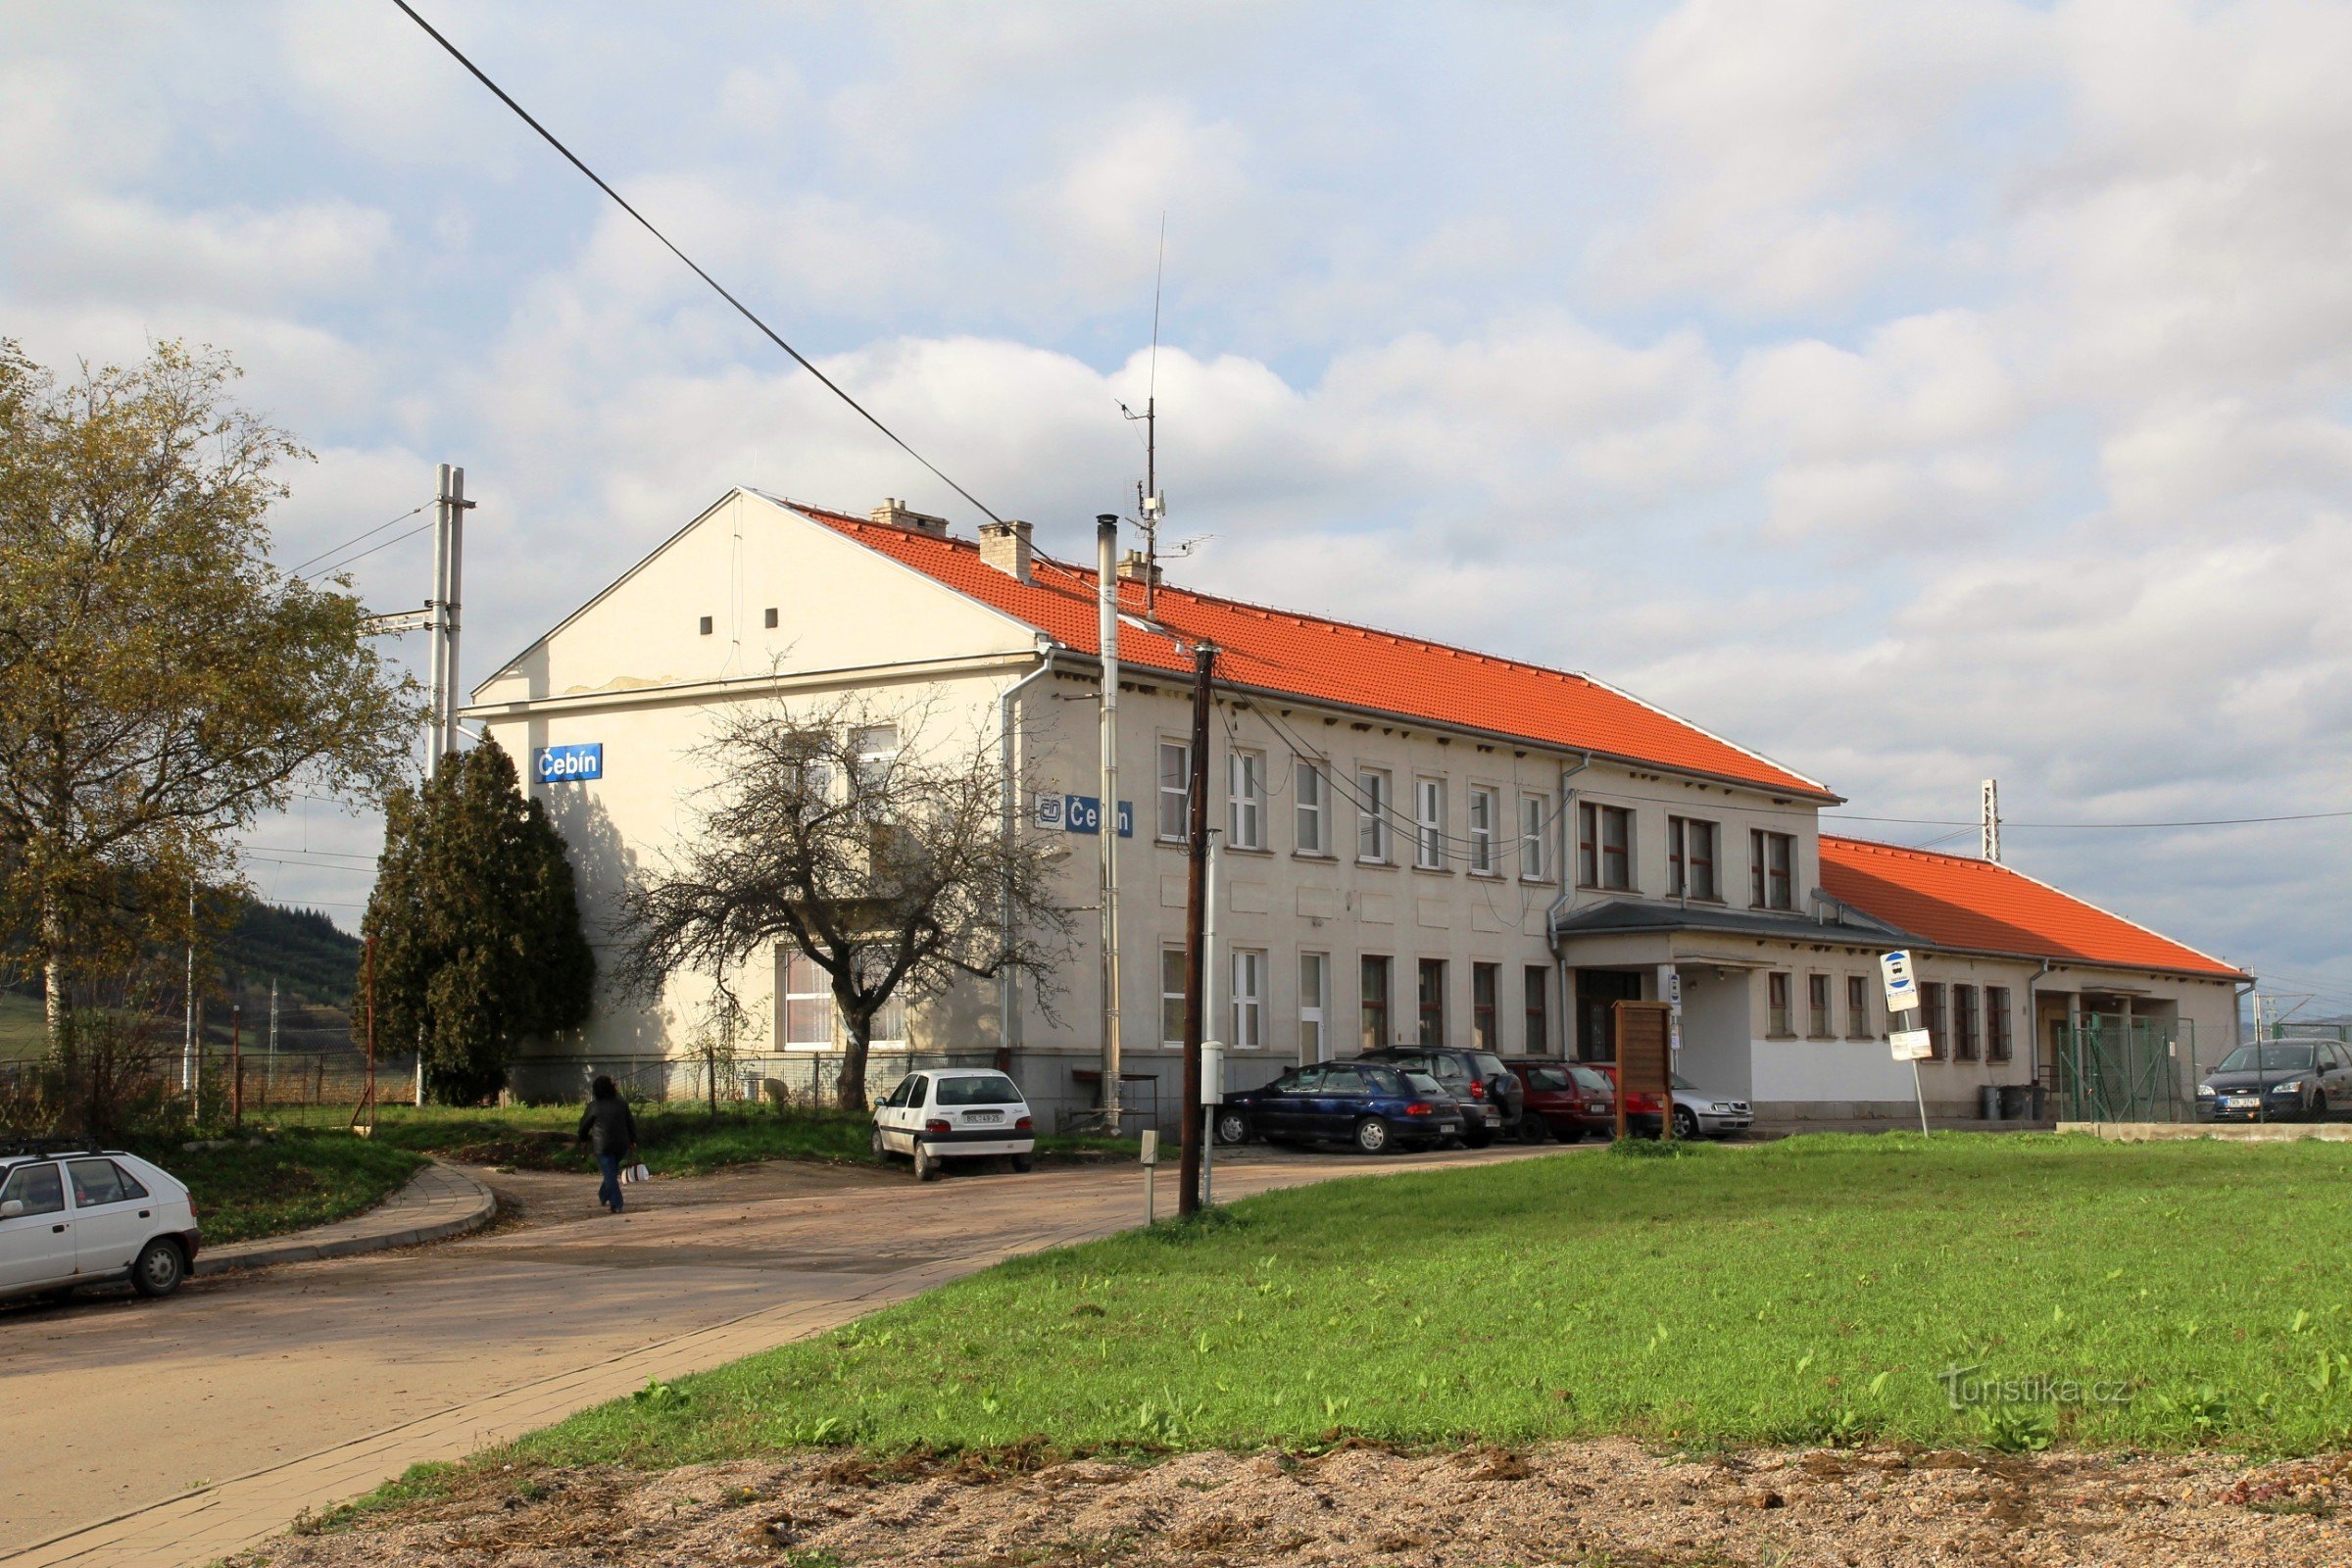 Edifício da estação em Čebín